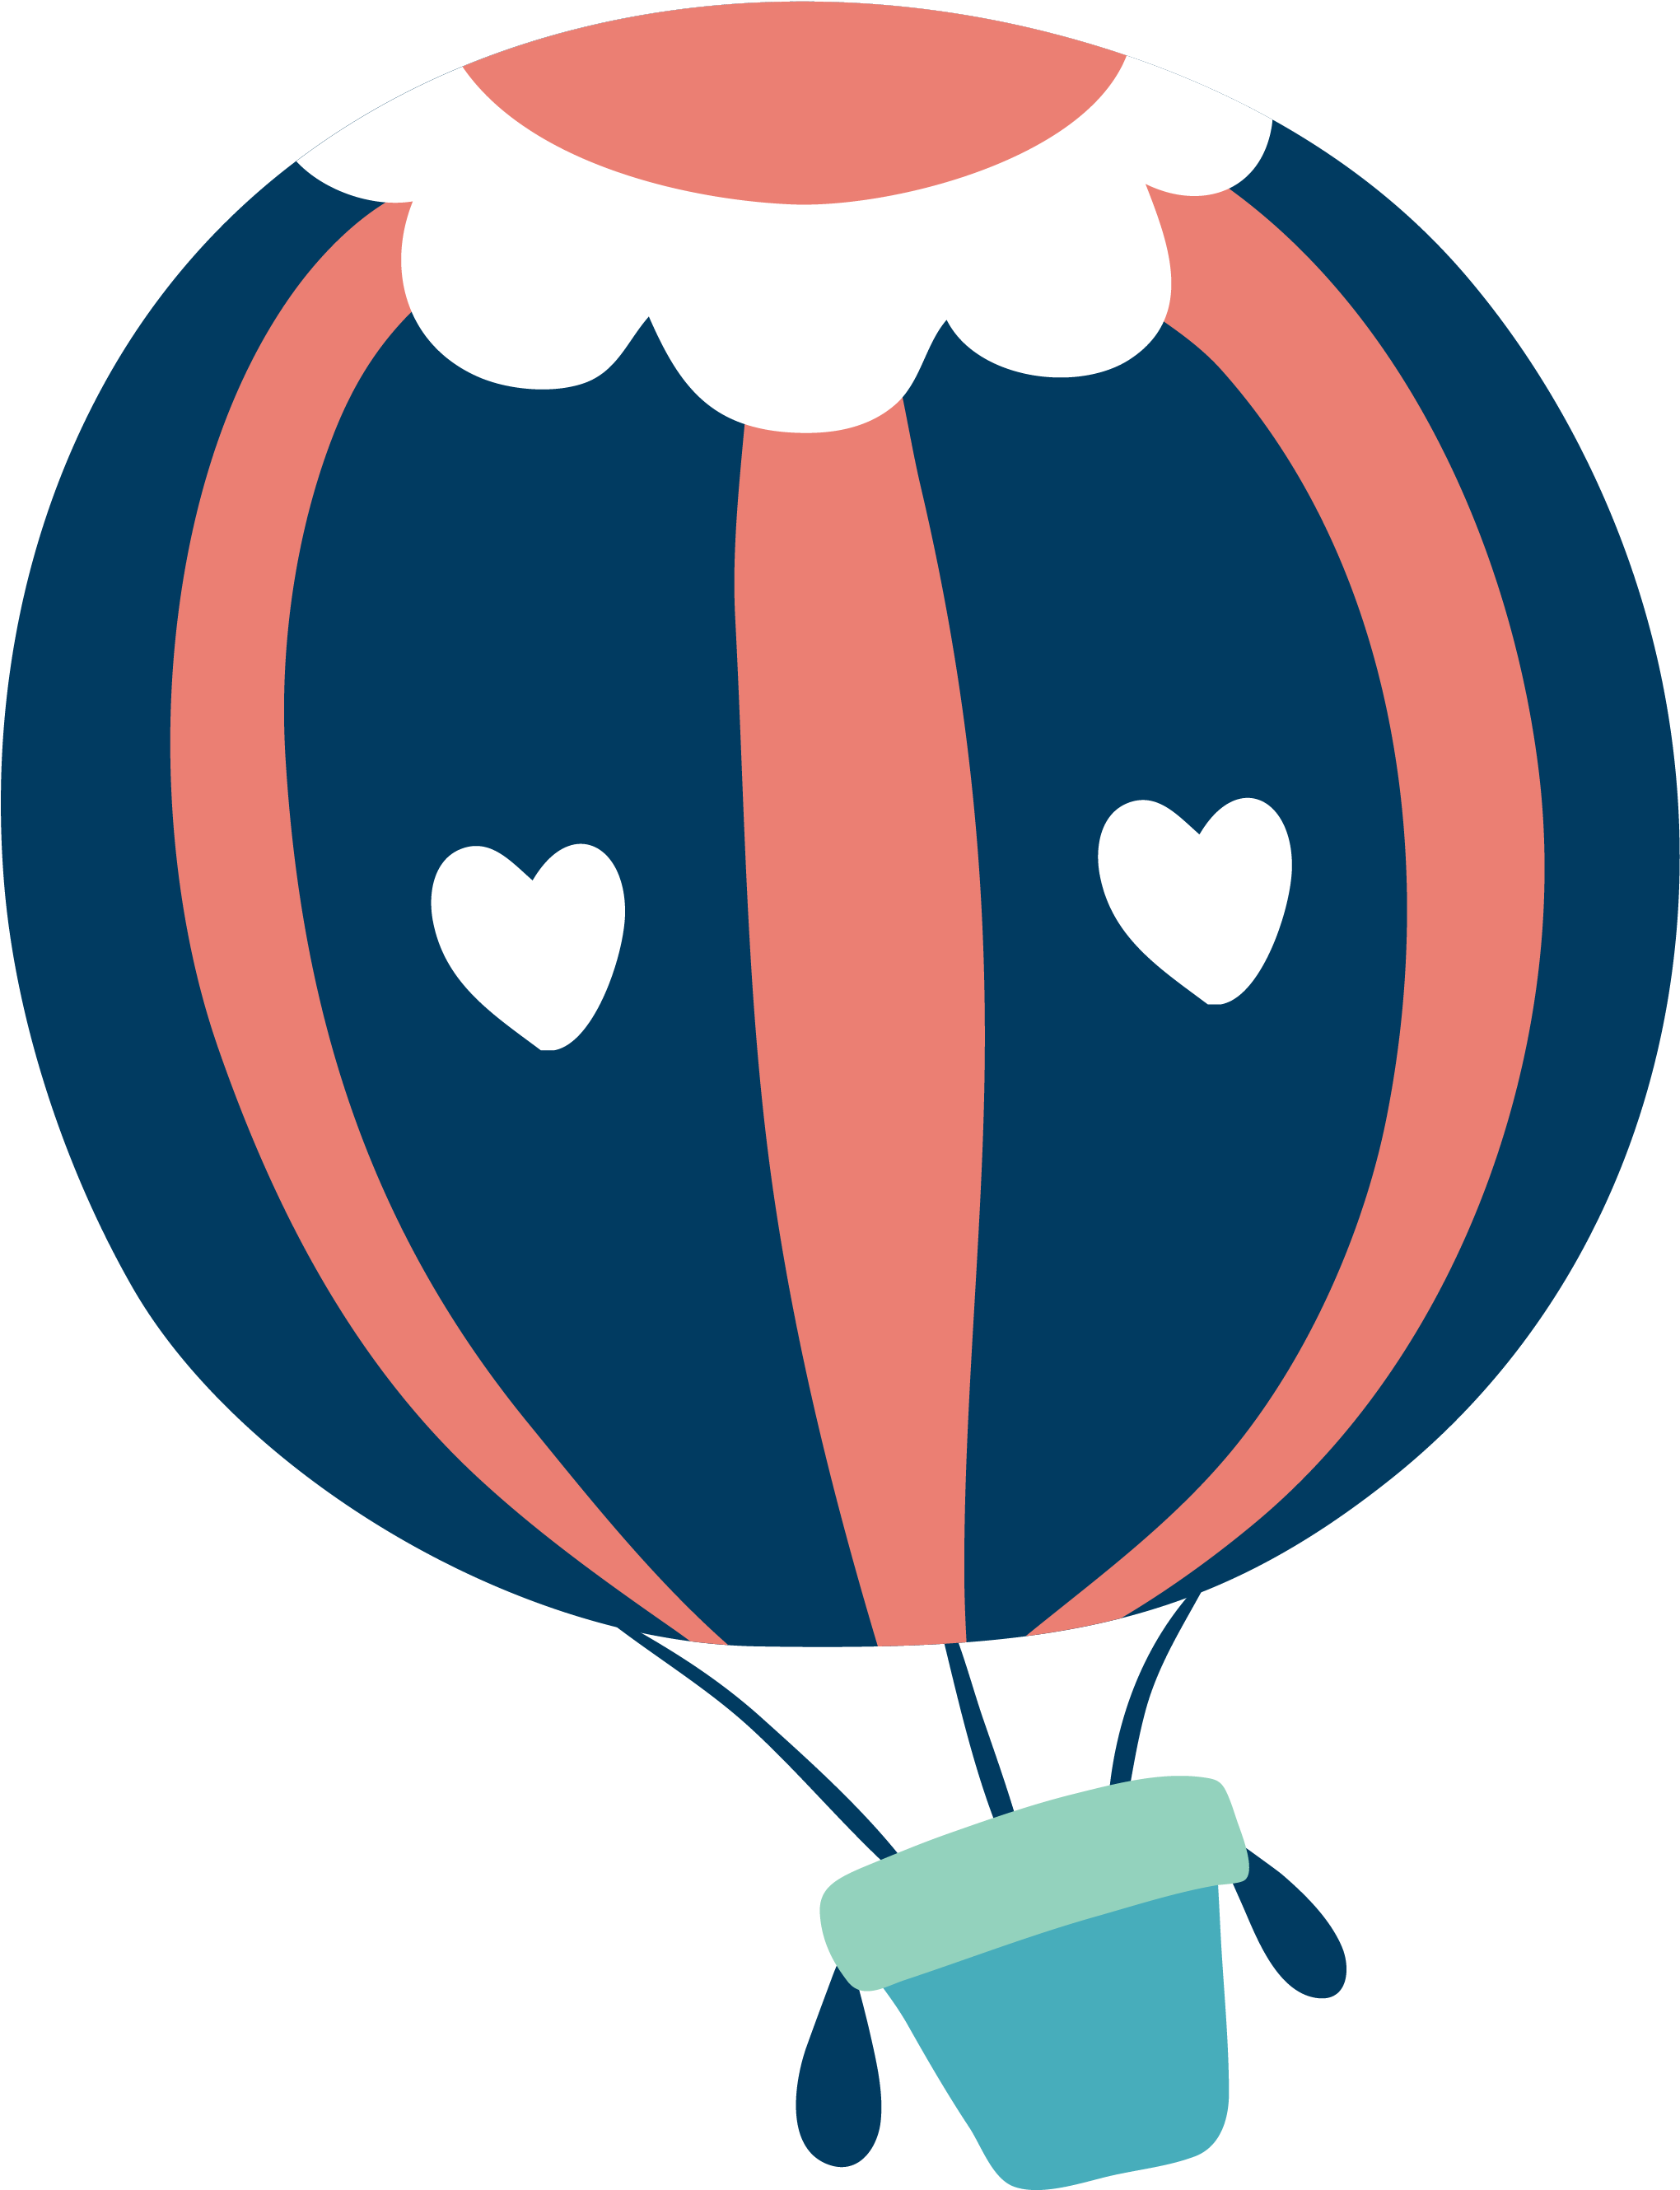 HD Balloon Clipart Vector.